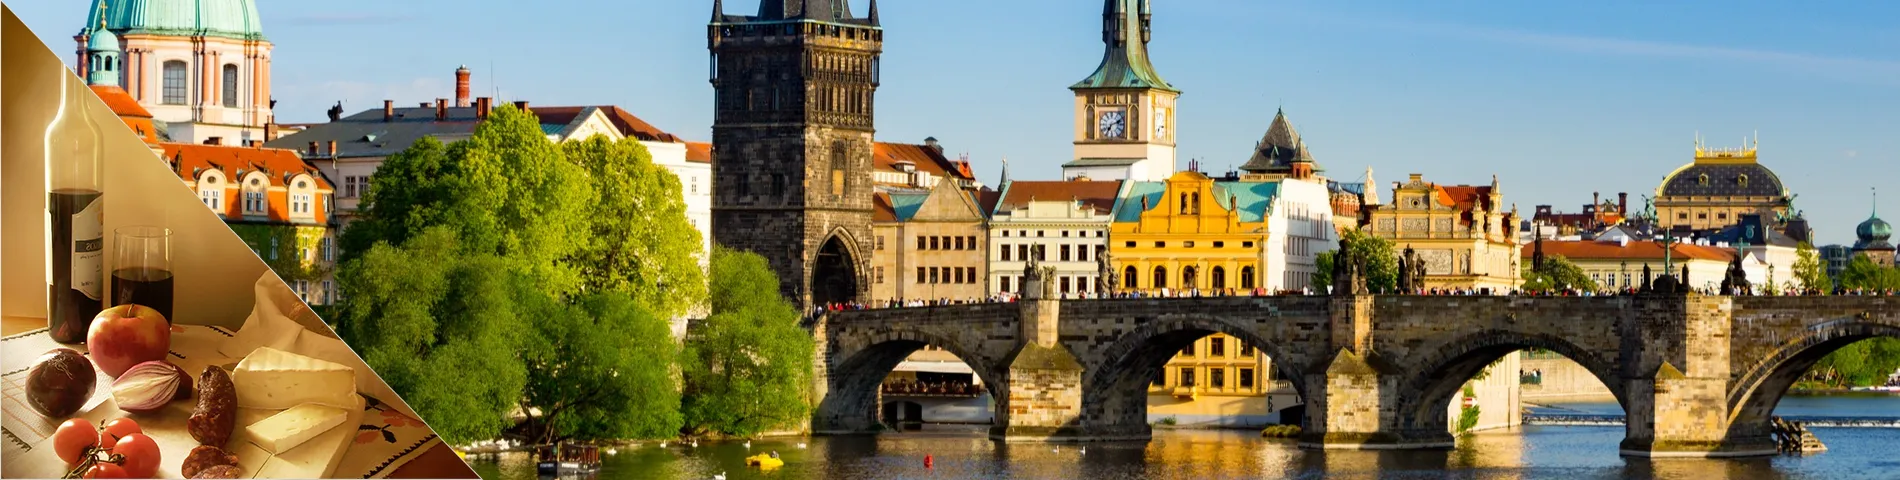 Прага - чеська та пізнання культури